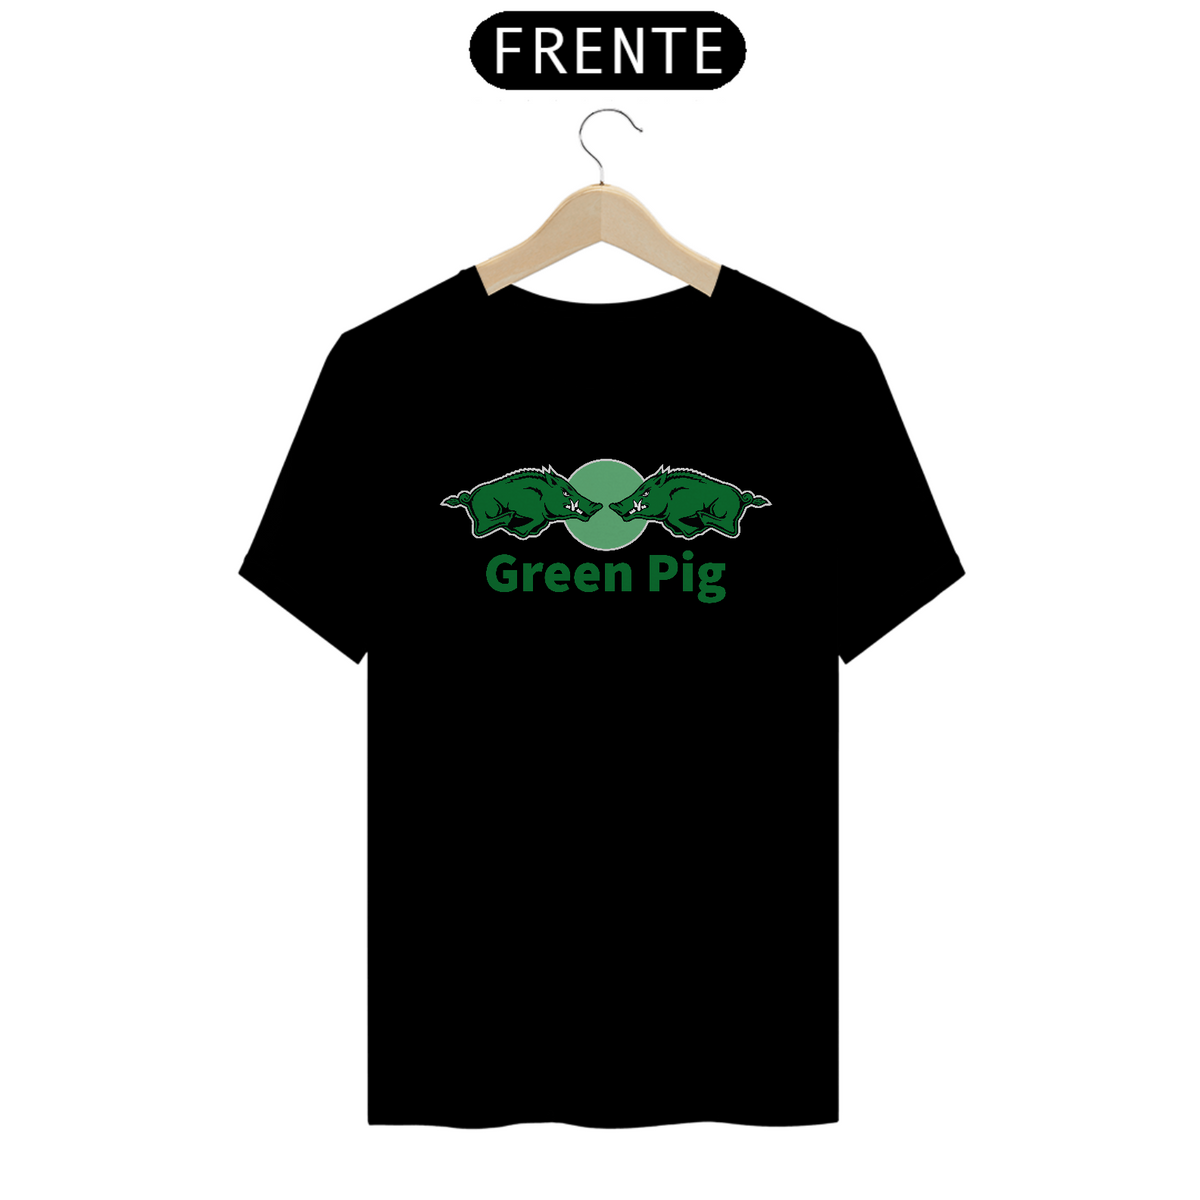 Nome do produto: Green Pig